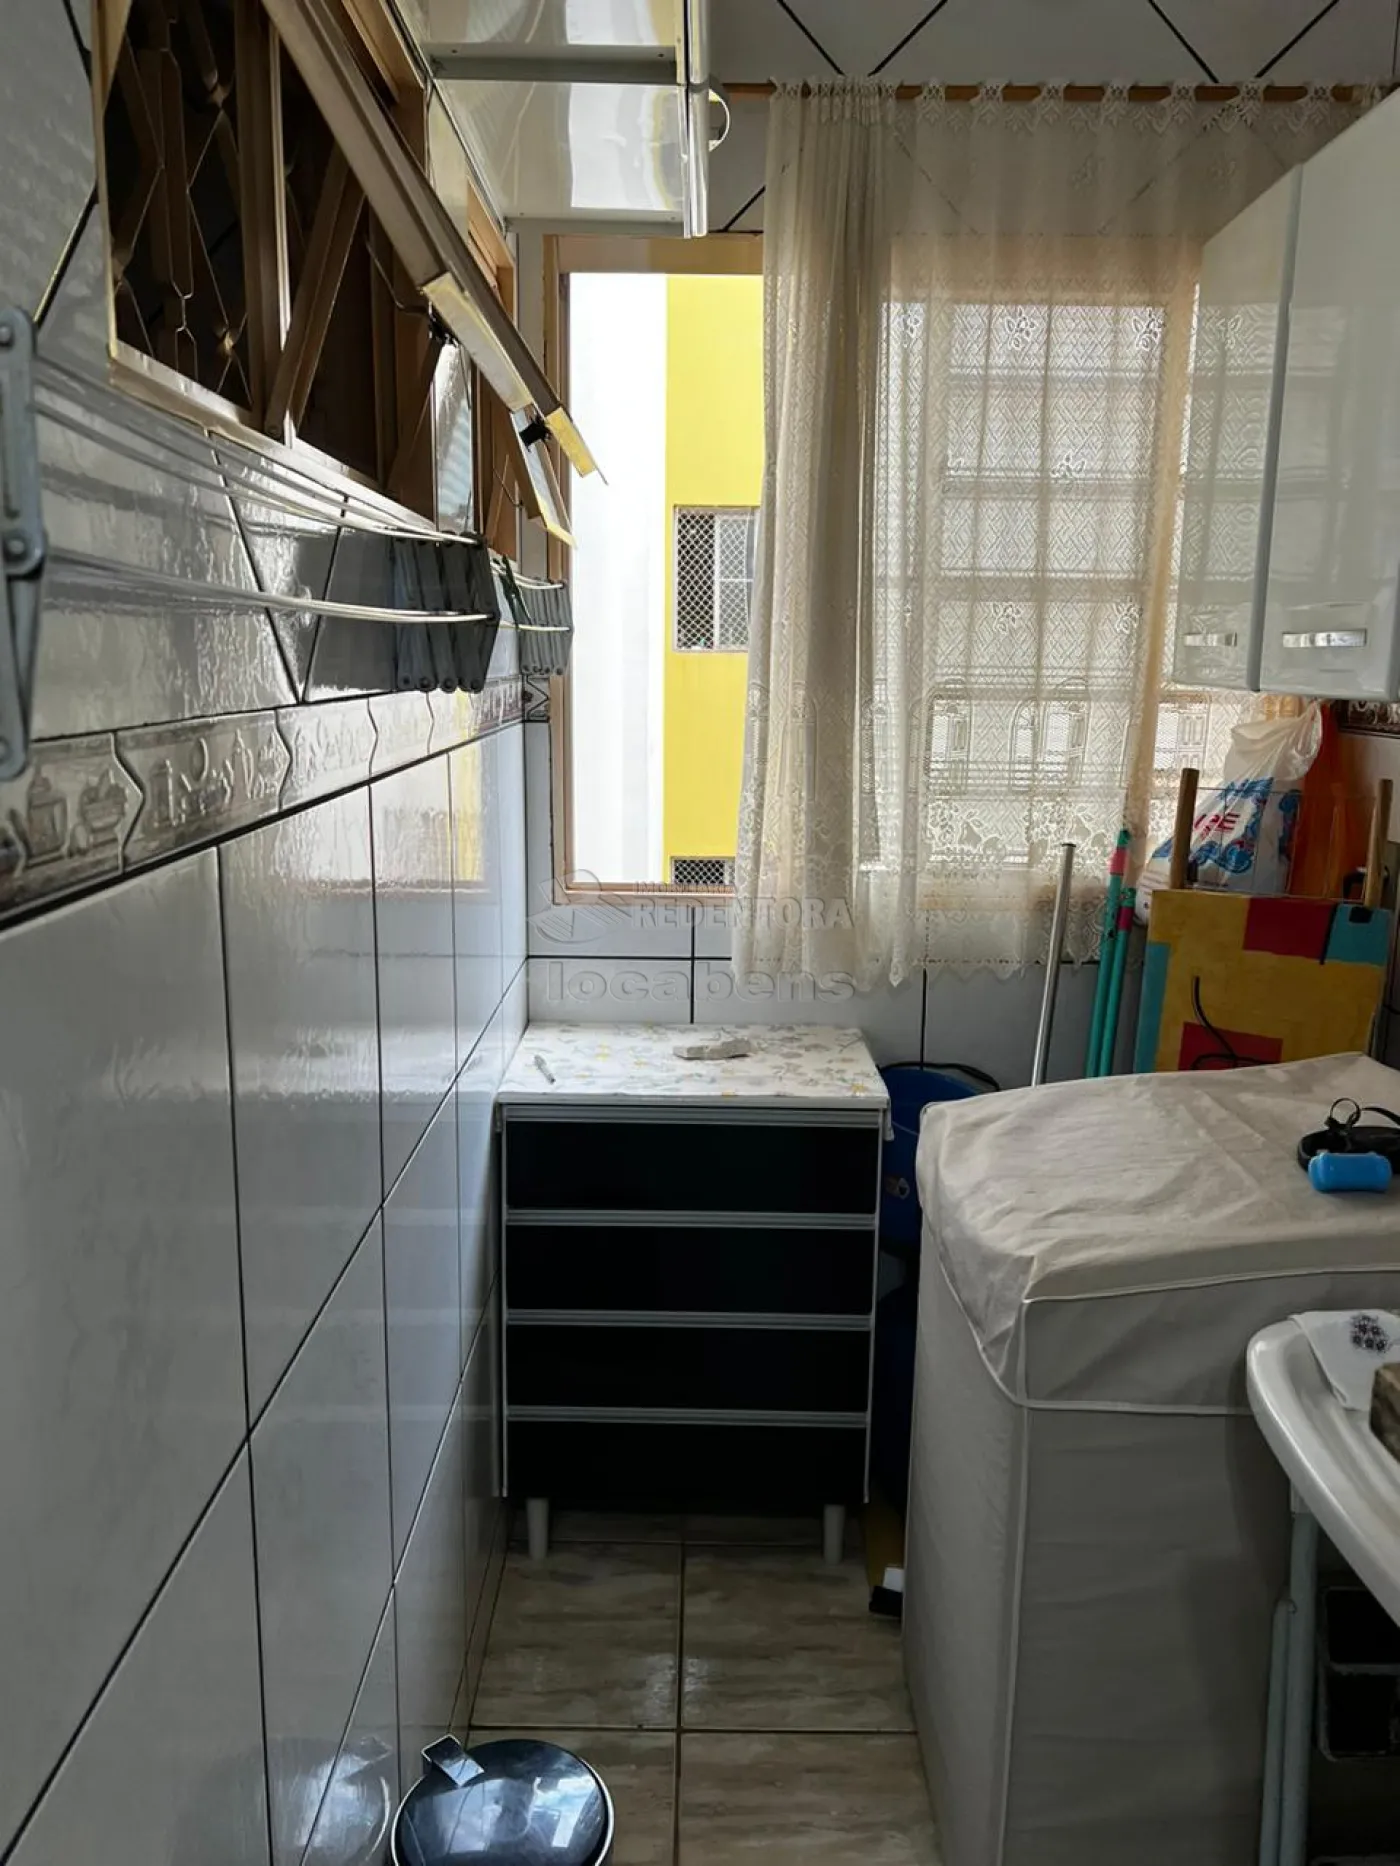 Alugar Apartamento / Padrão em São José do Rio Preto apenas R$ 1.500,00 - Foto 17